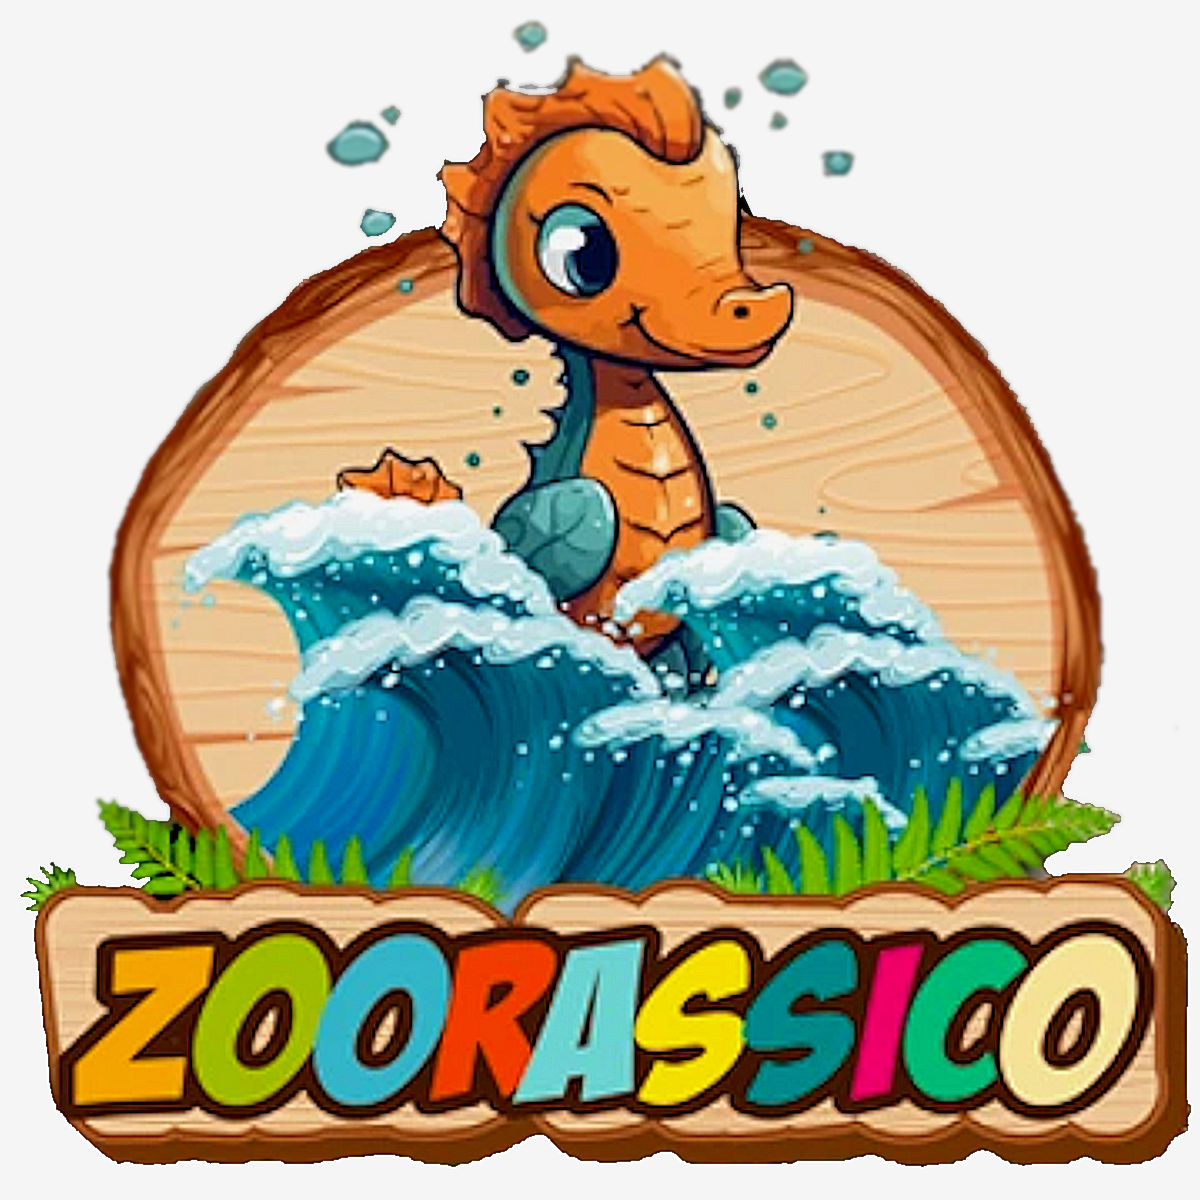 Zoomarine apre le porte a Zoorassico: un viaggio indimenticabile nell’era dei dinosauri!